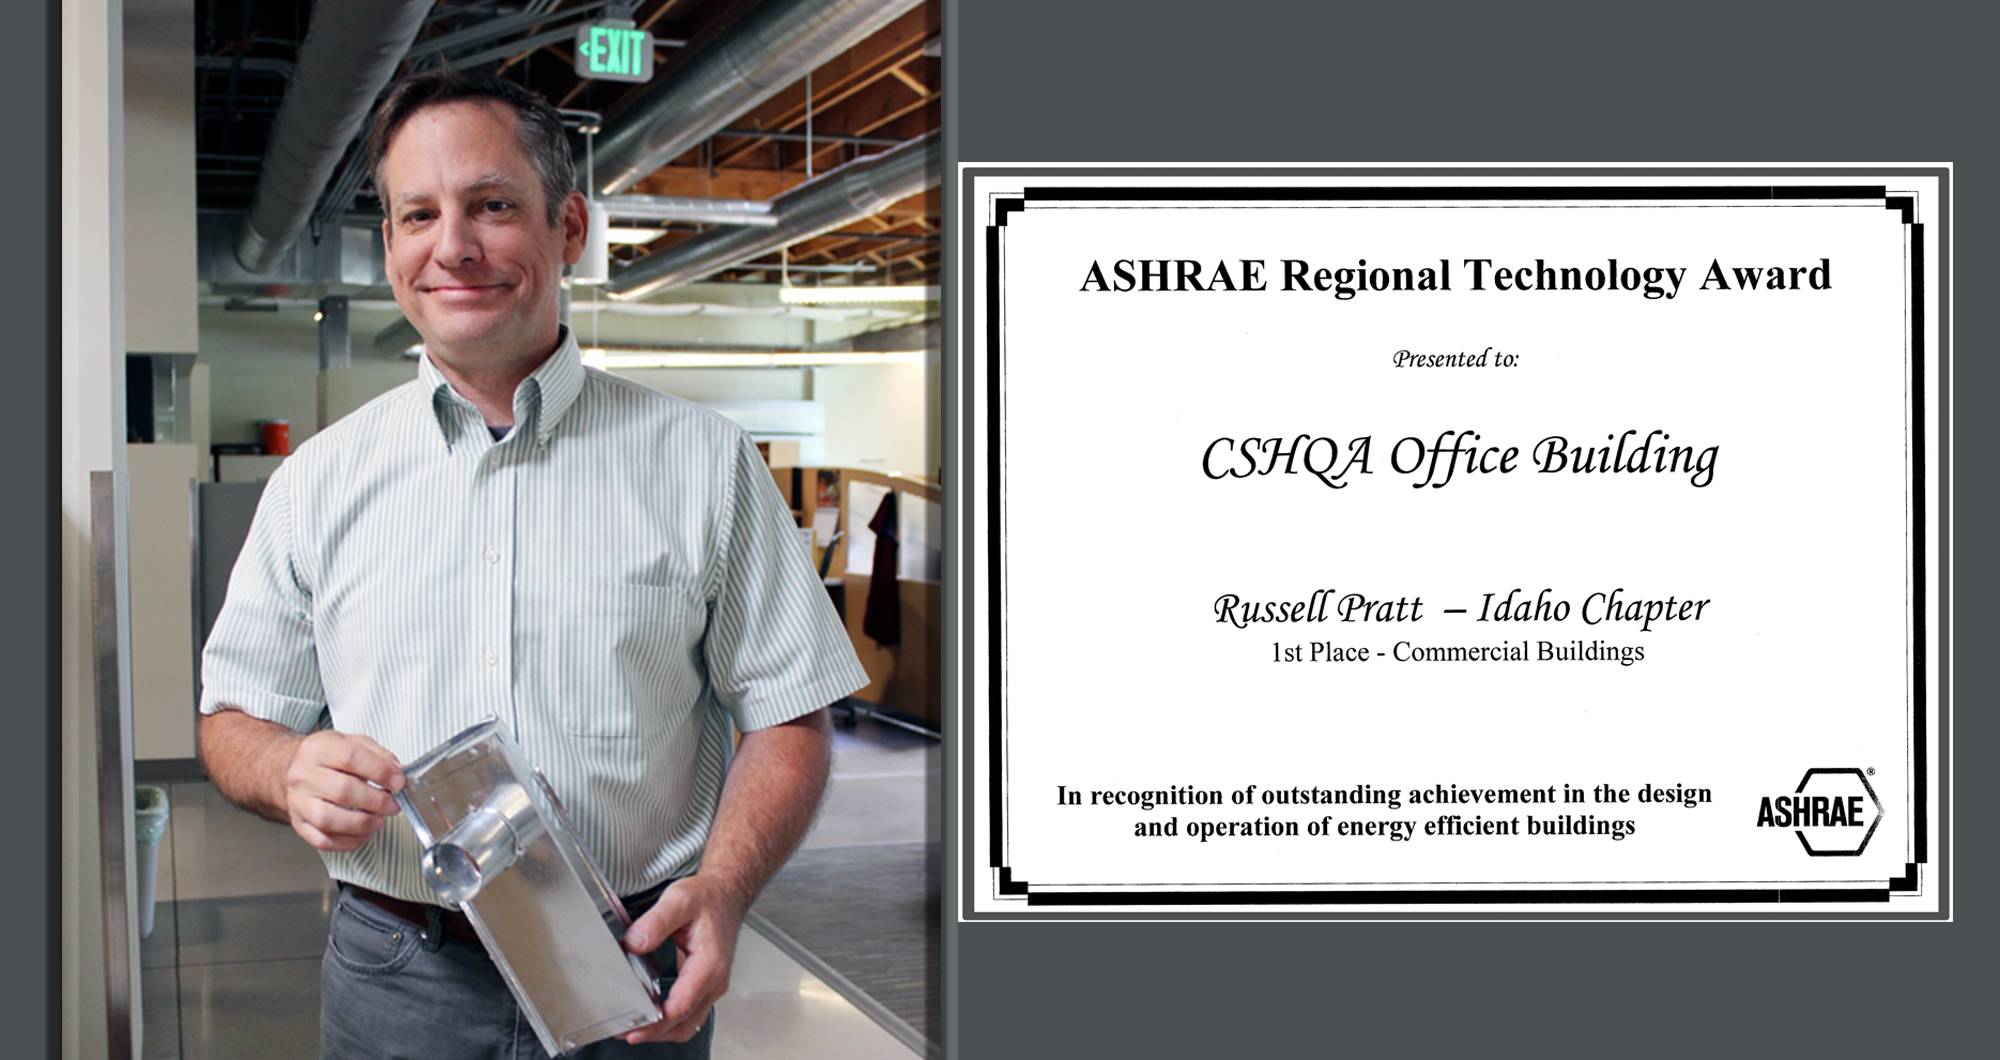 CSHQA’s Boise Office Building earned an ASHRAE Regional Technology Award